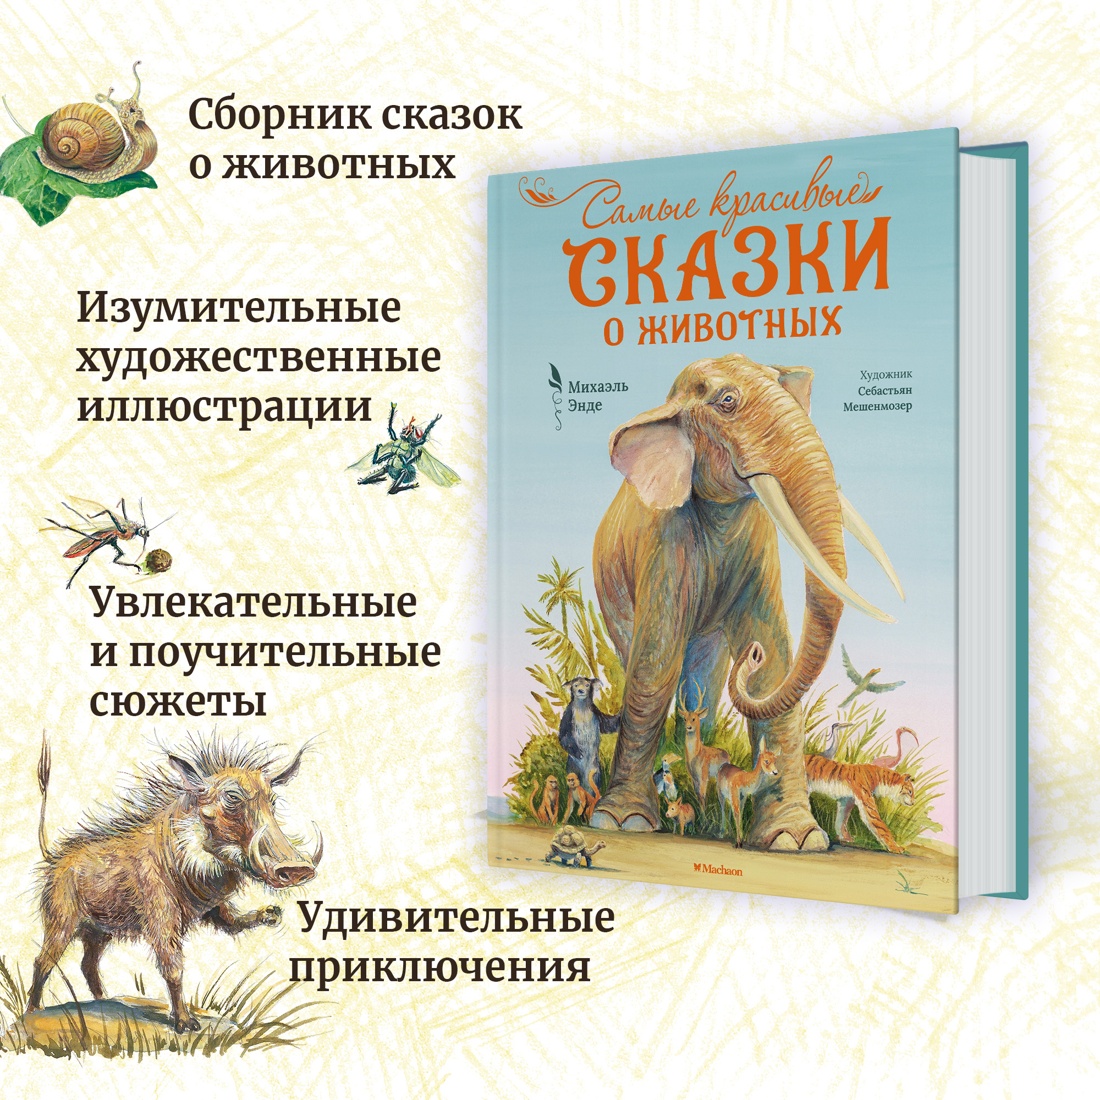 Промо материал к книге "Самые красивые сказки о животных" №1